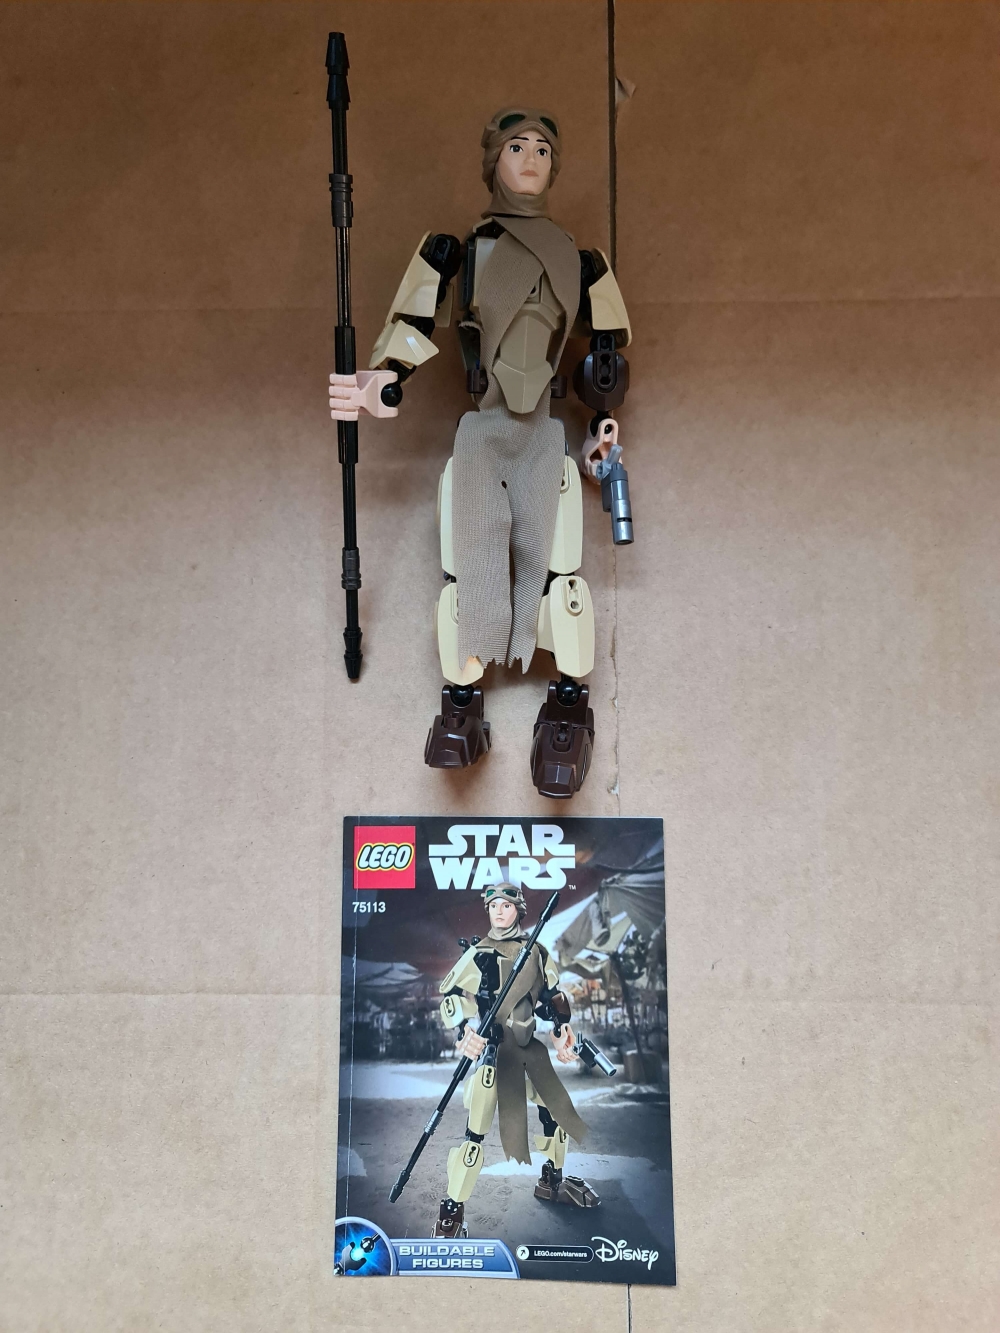 Sett 75113 fra Lego Star Wars : Buildable Figures : Episode 7 serien.
Meget pent. Som nytt.
Komplett med manual.